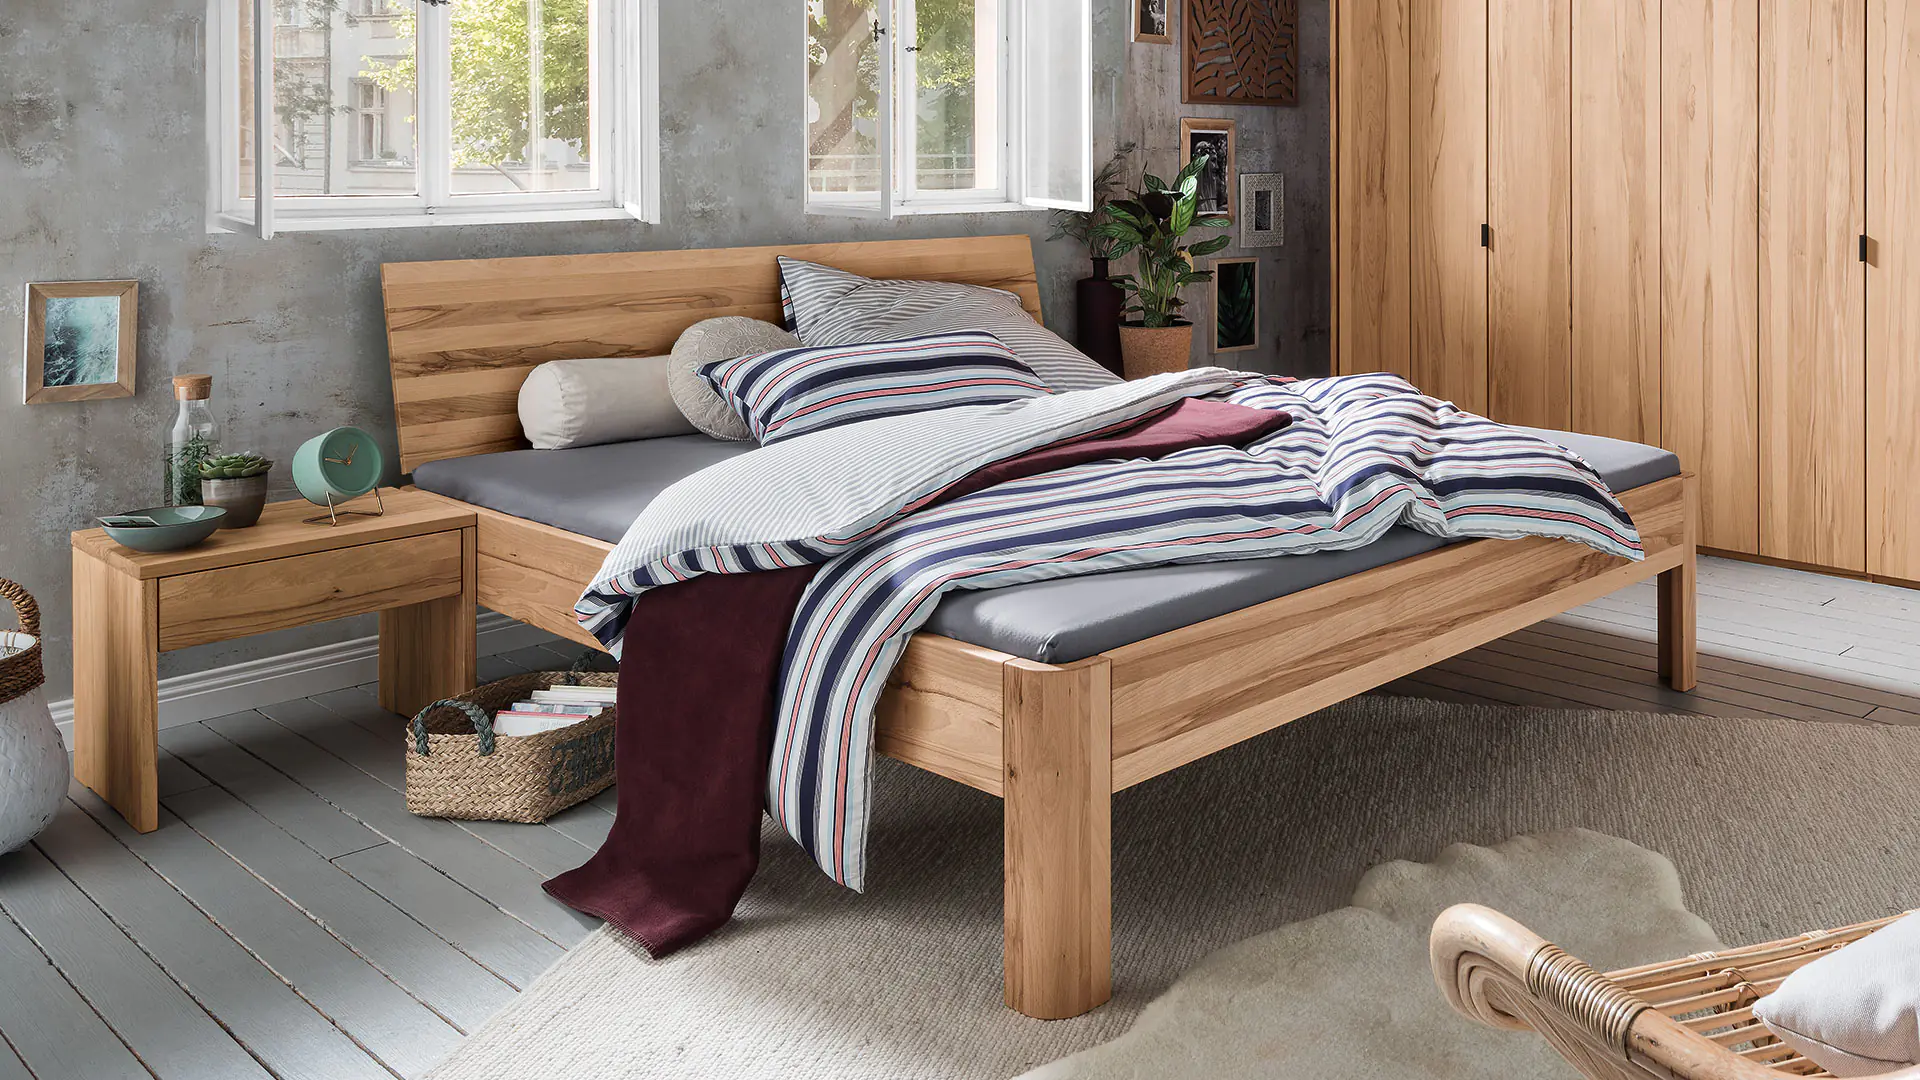 Svariata massief houten bed, kernbeuken, ronde bedpoten en doorlopend hoofdbord